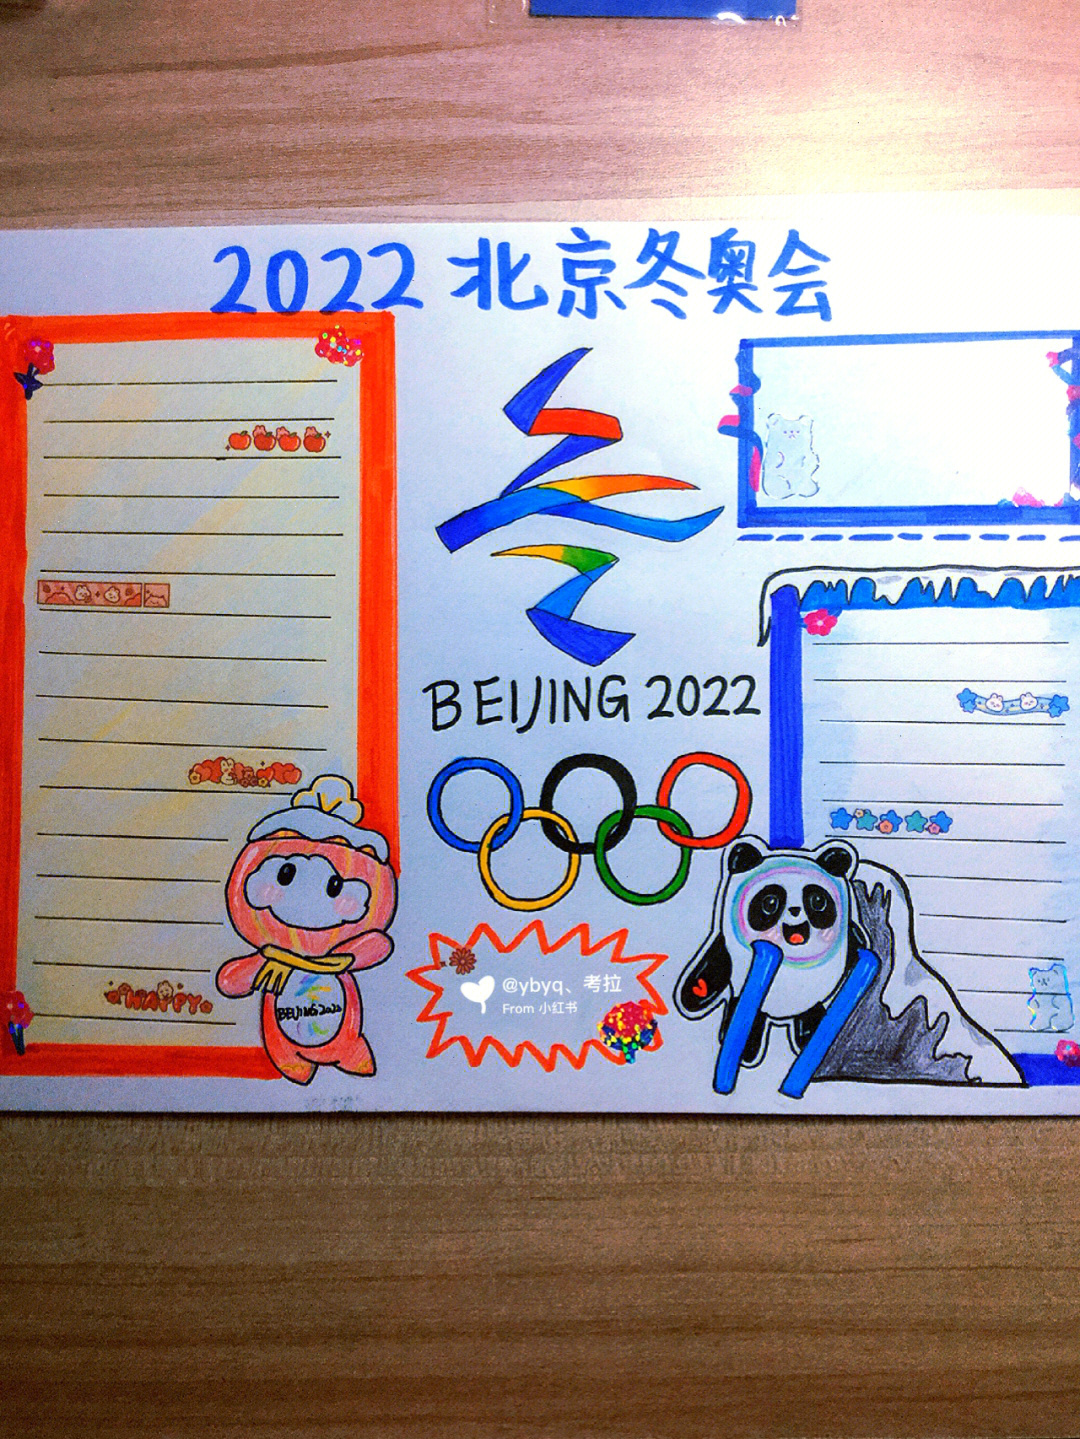 2022冬奥会剪报图片